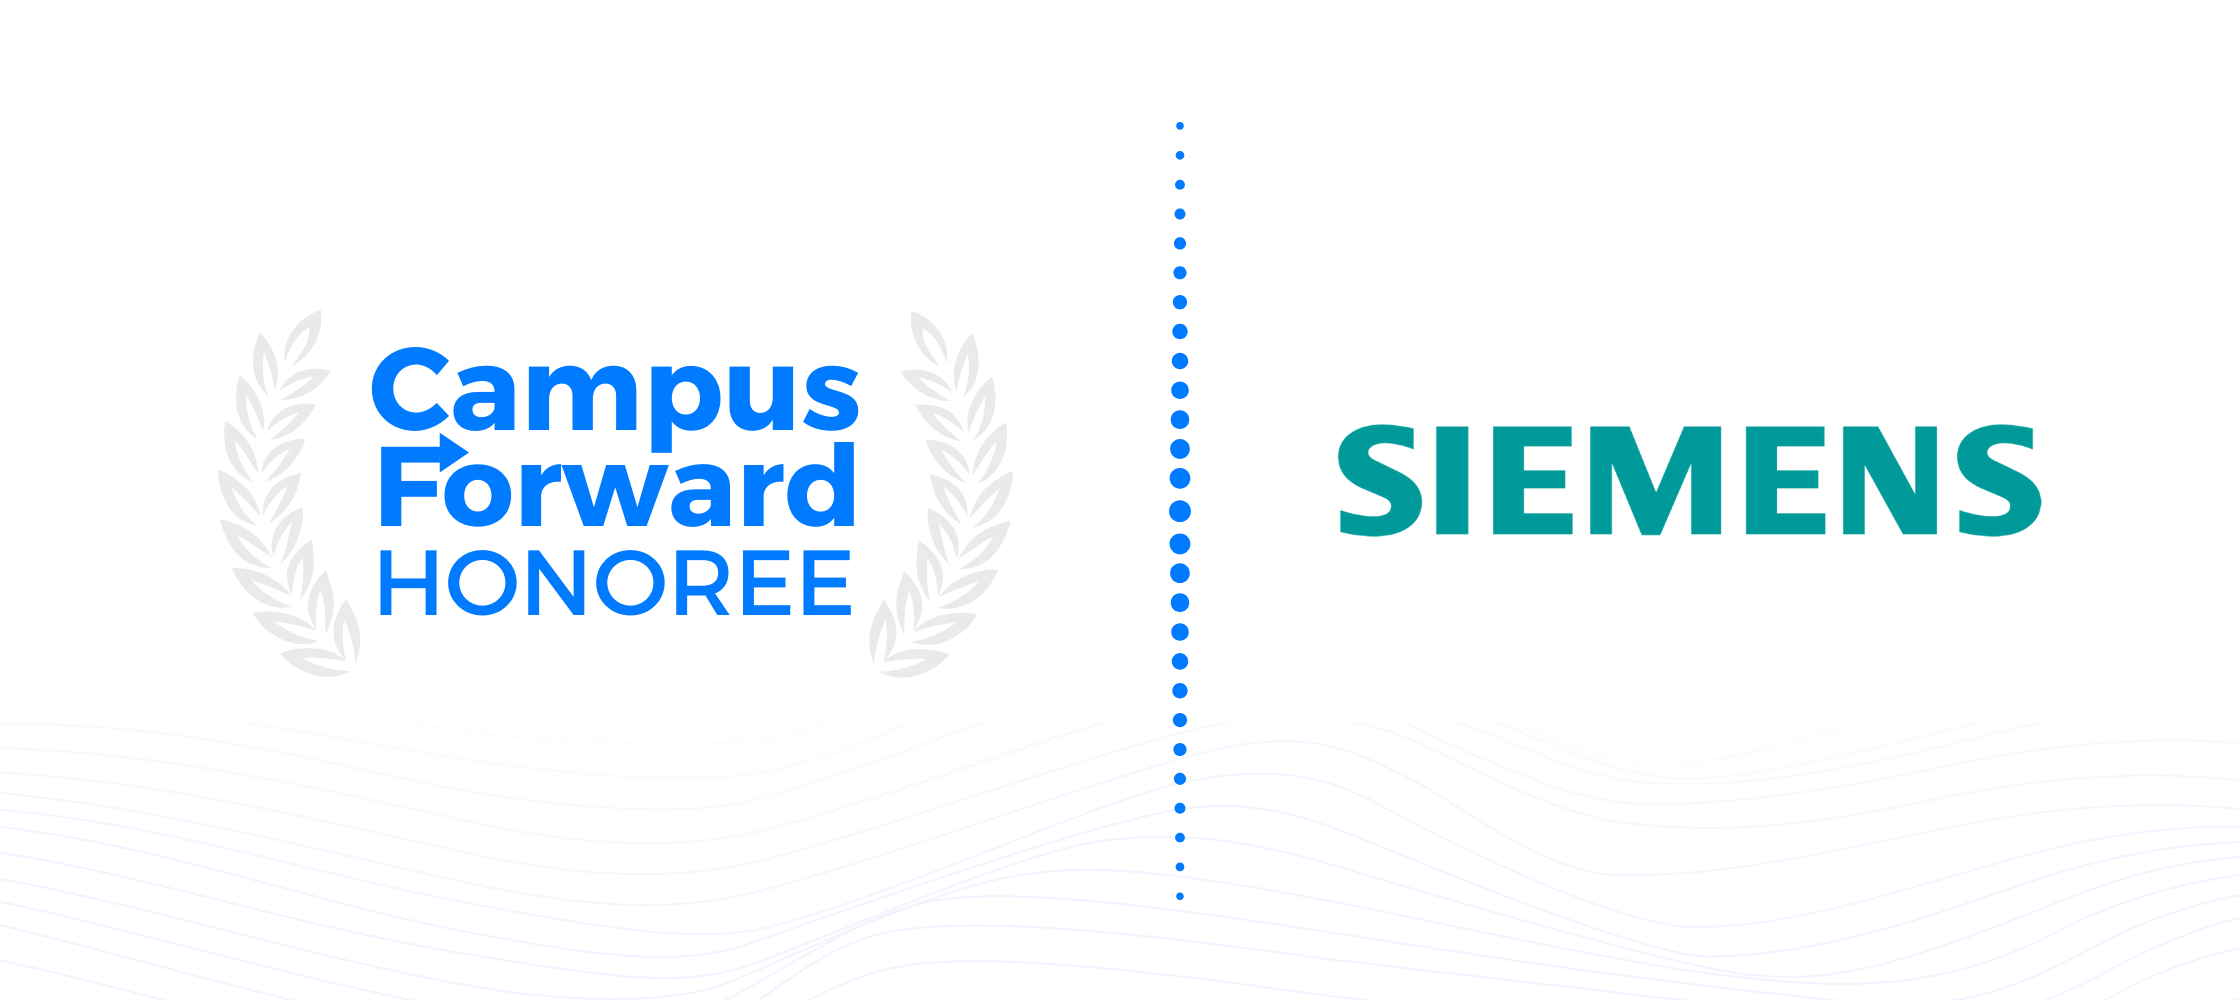 Campus Forward Honoree - Siemens